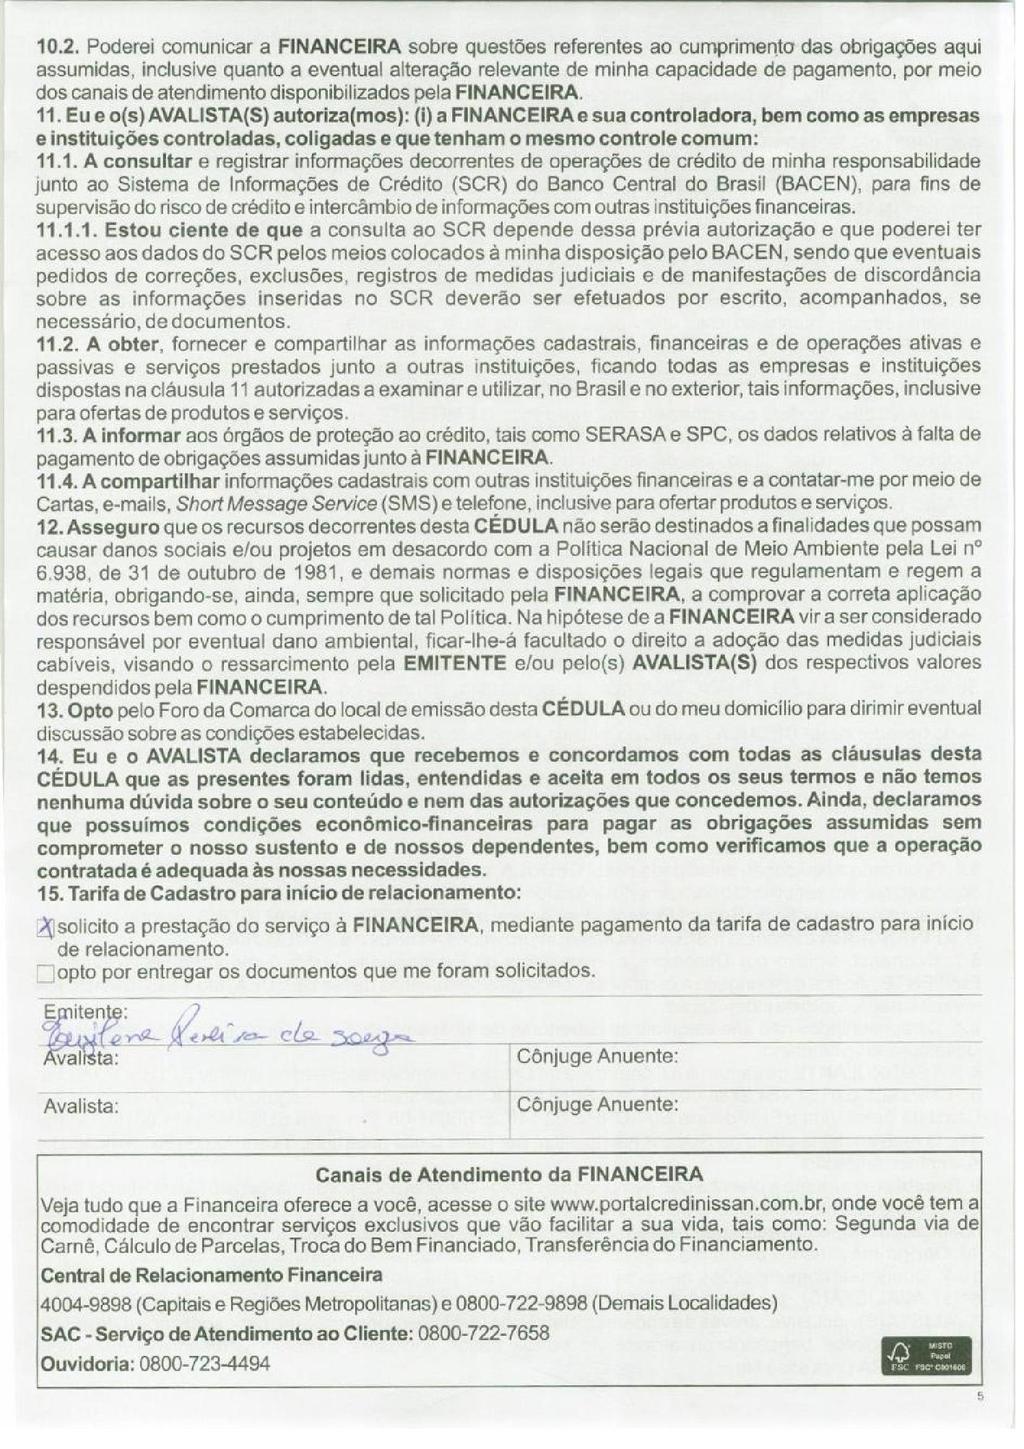 Documento assinado digitalmente por Interfile Gestão Integ Proc SA, conforme M.P. 2.